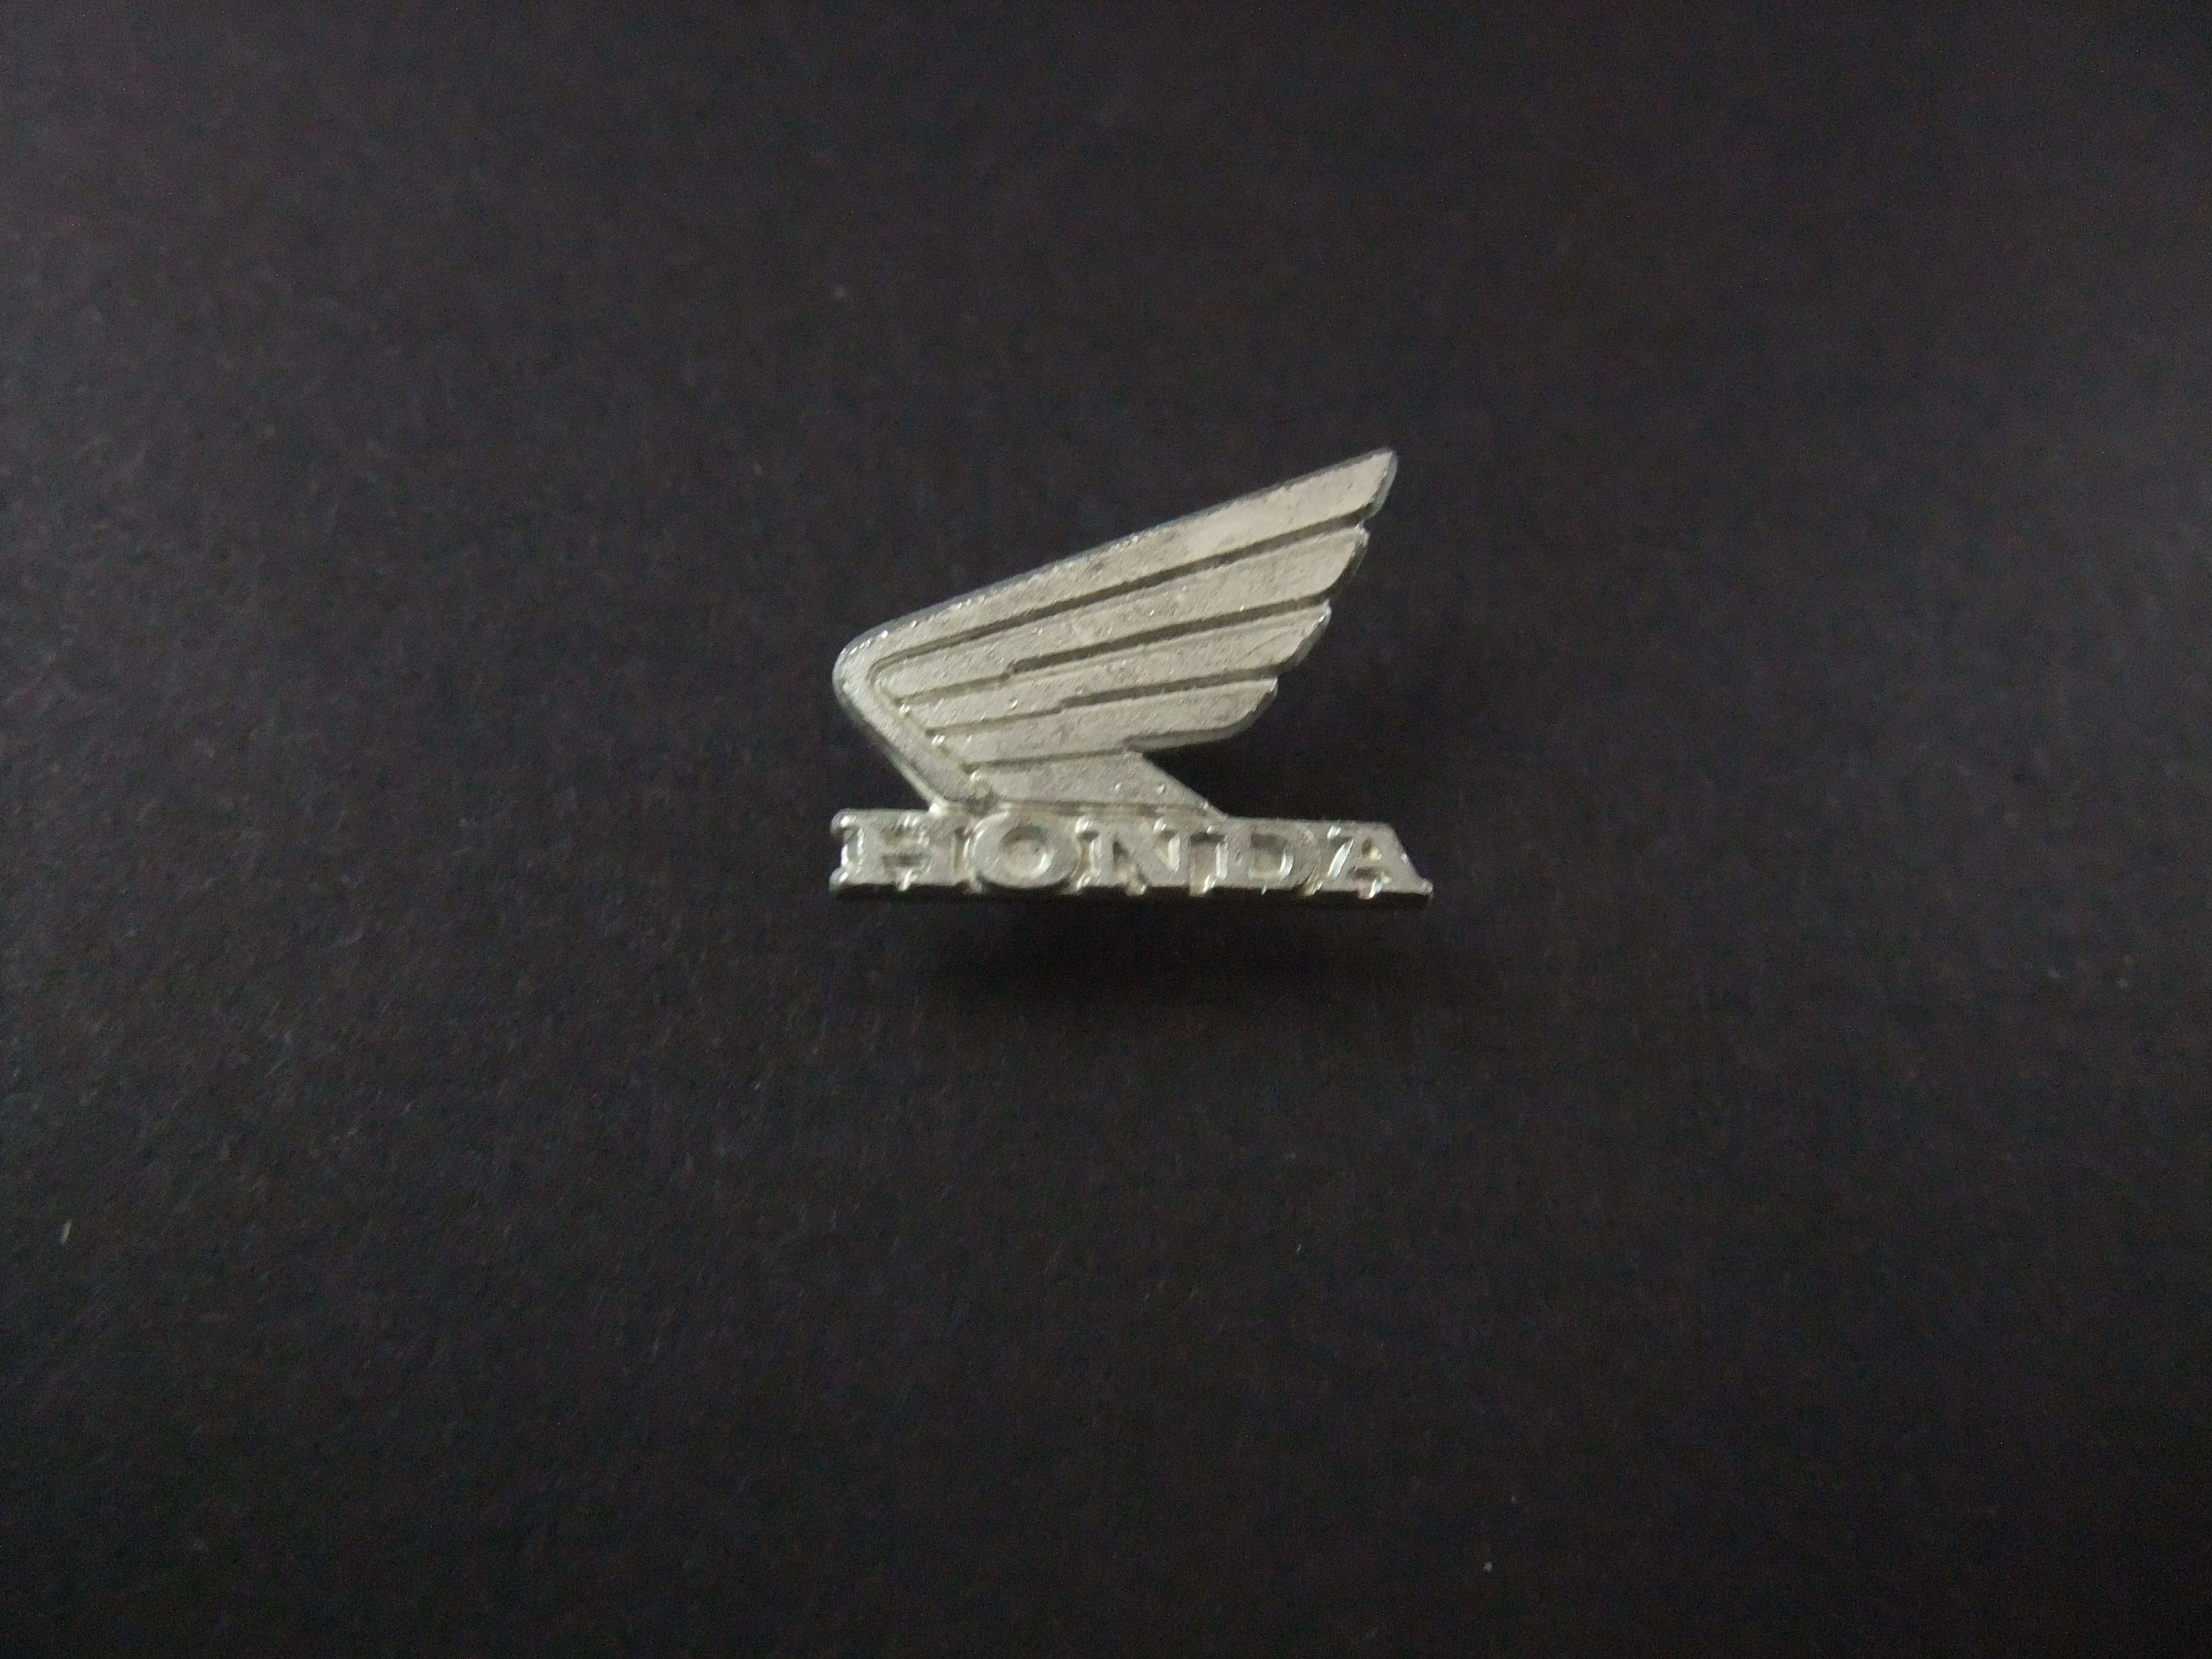 Honda motor zilverkleurig logo